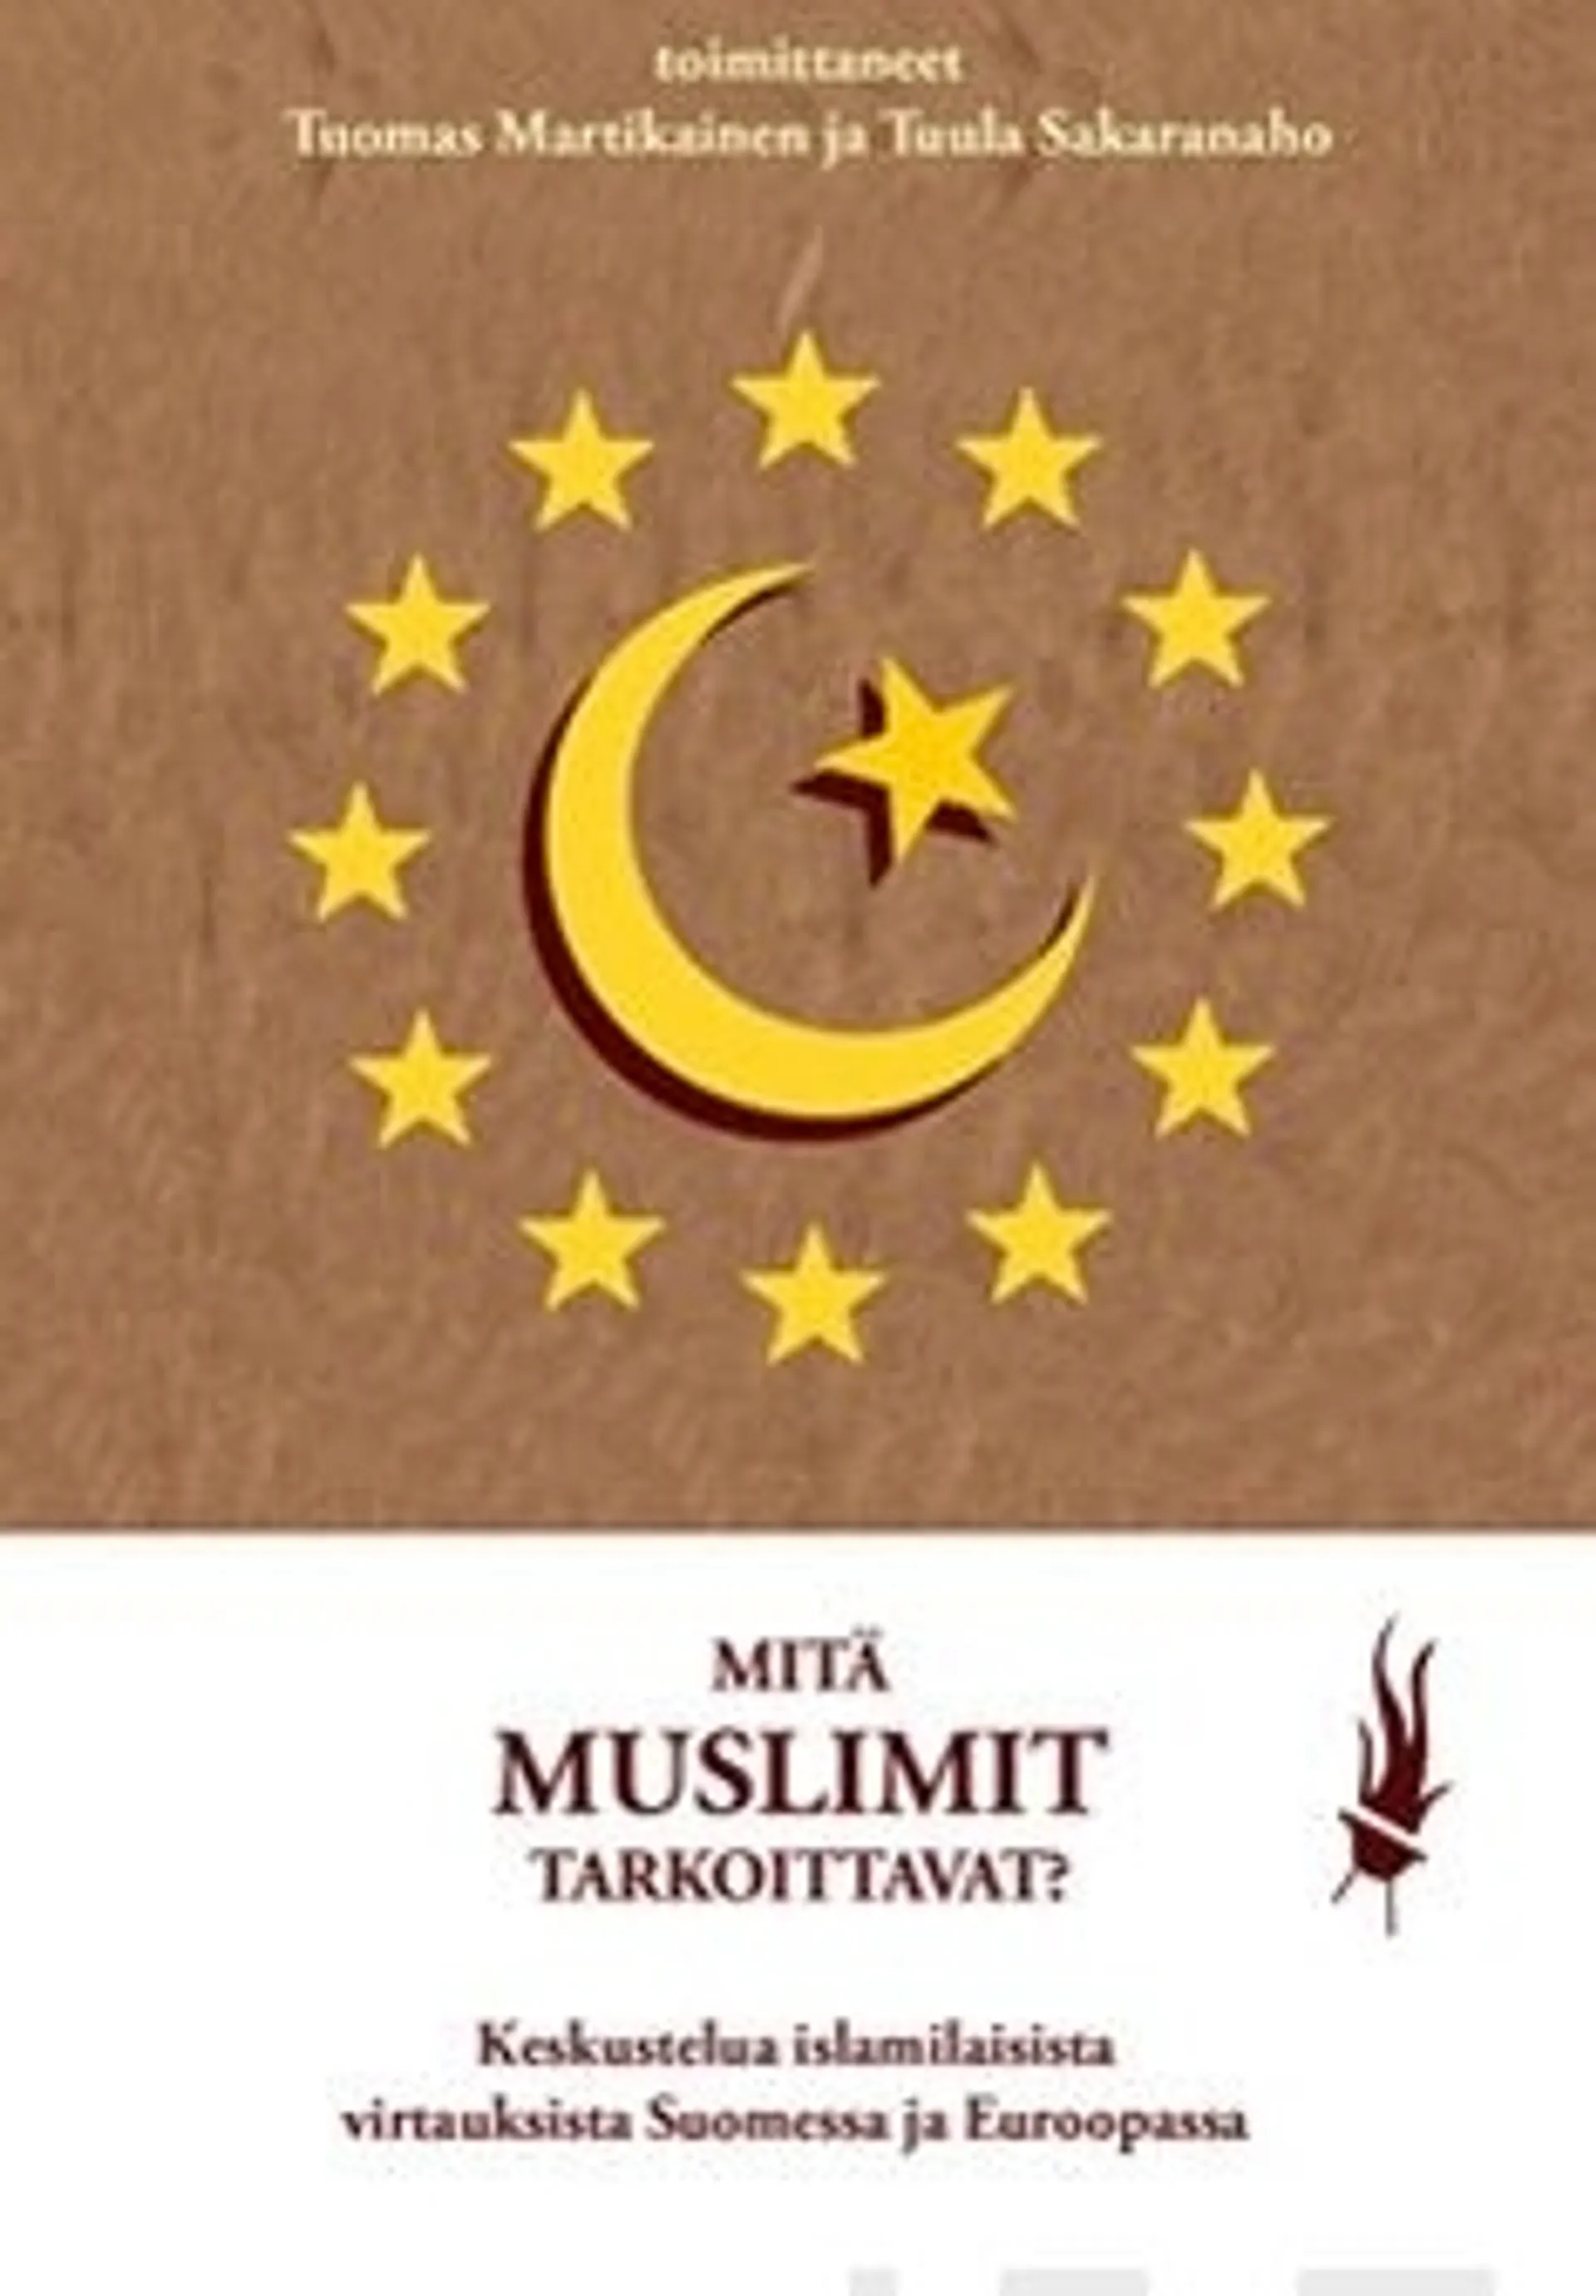 Mitä muslimit tarkoittavat? - keskustelua islamilaisista virtauksista Suomessa ja Euroopassa